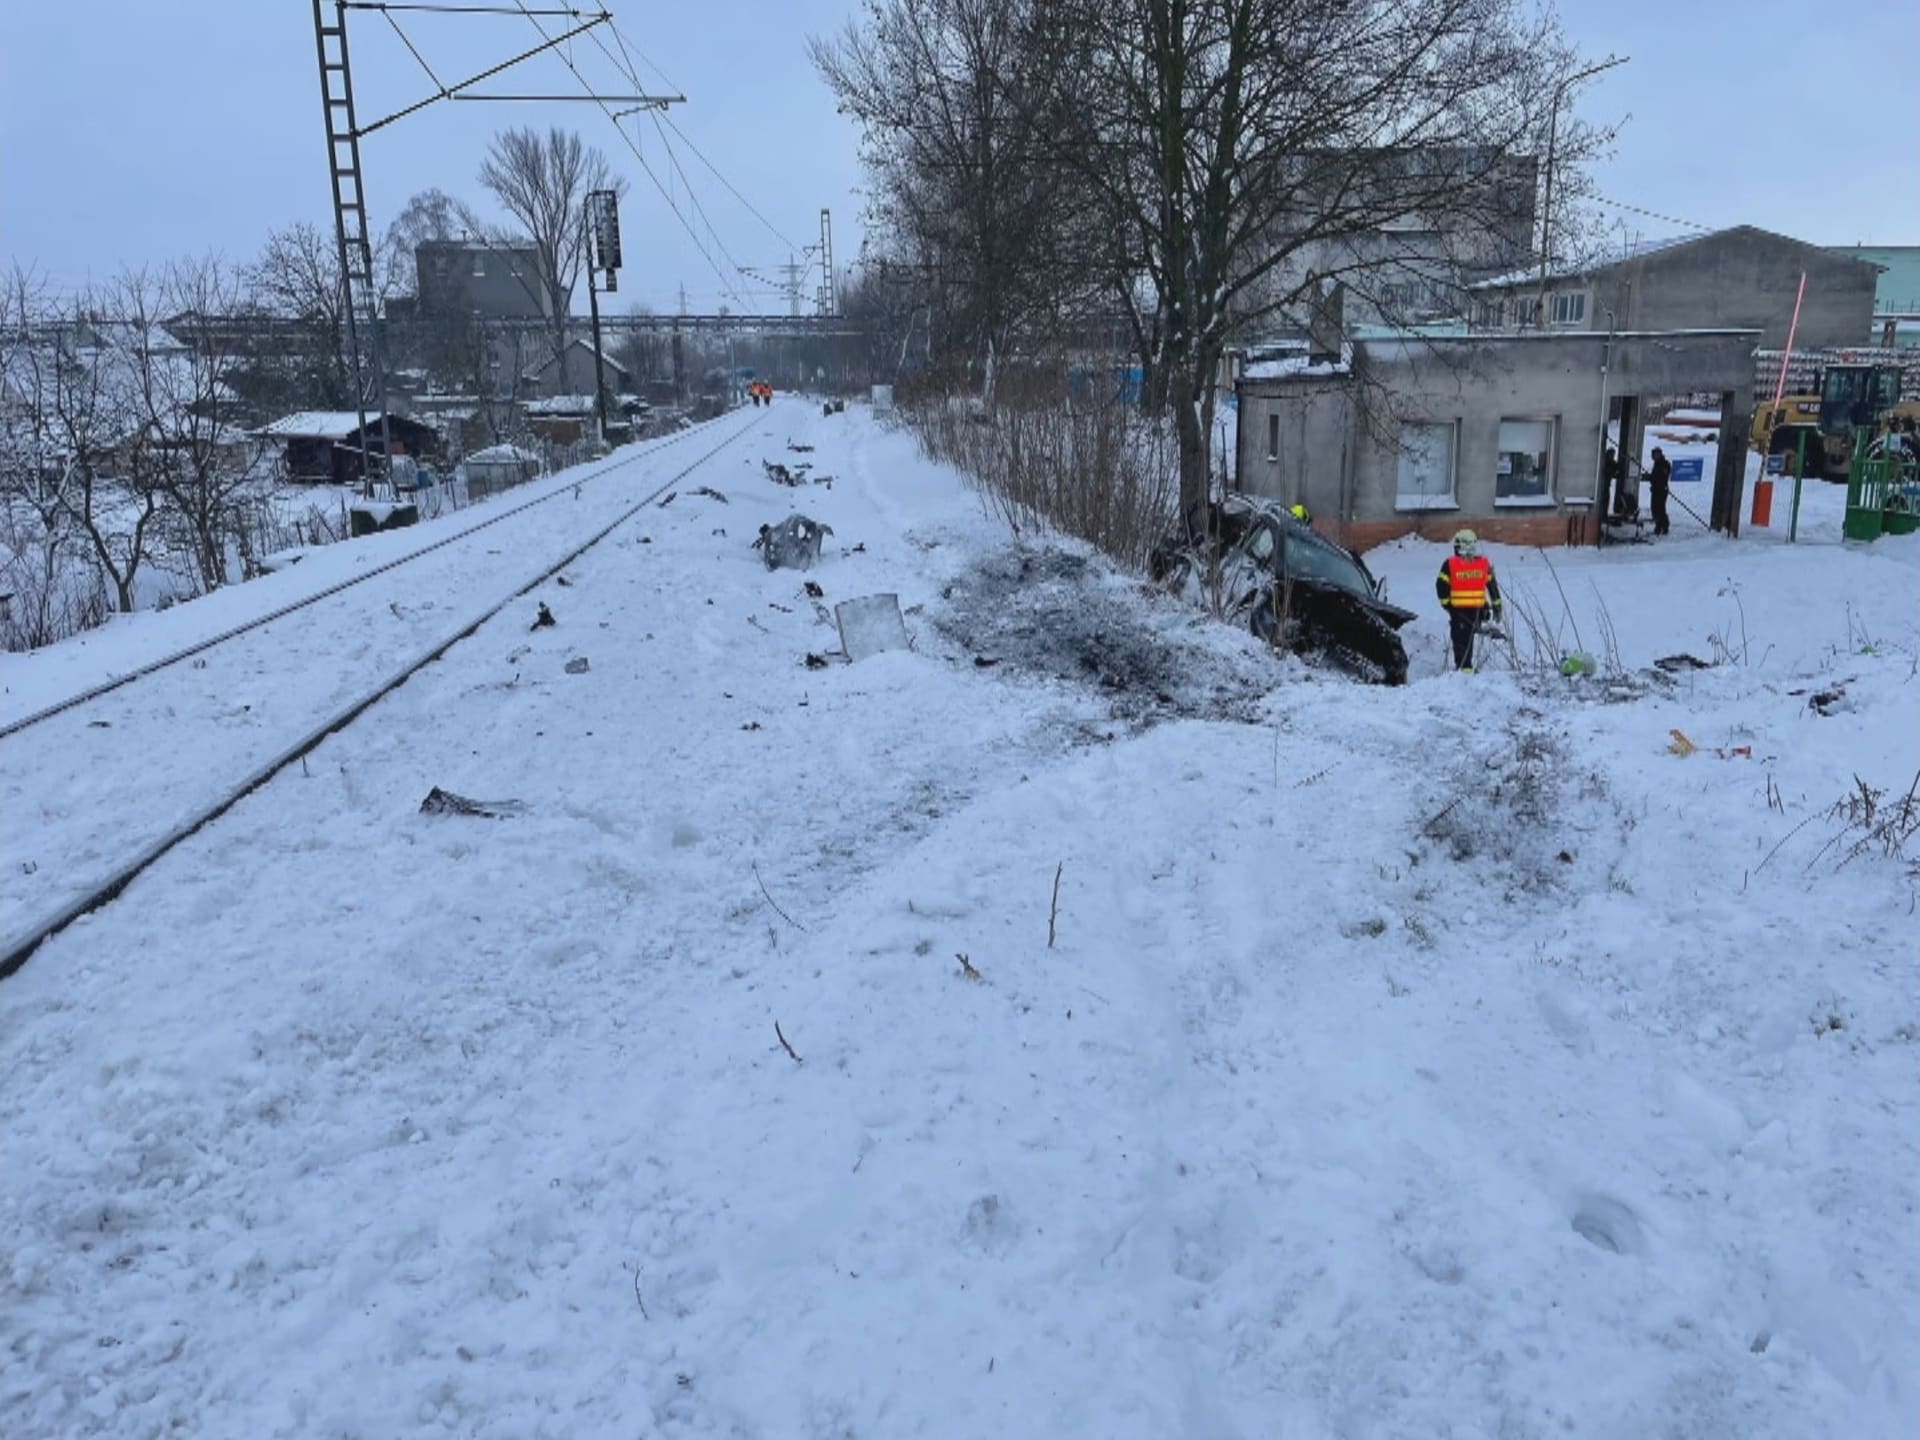 Po sobotní srážce vlaku s osobním autem na přejezdu v Ostravě-Třebovicích zemřely dvě děti cestující v autě.